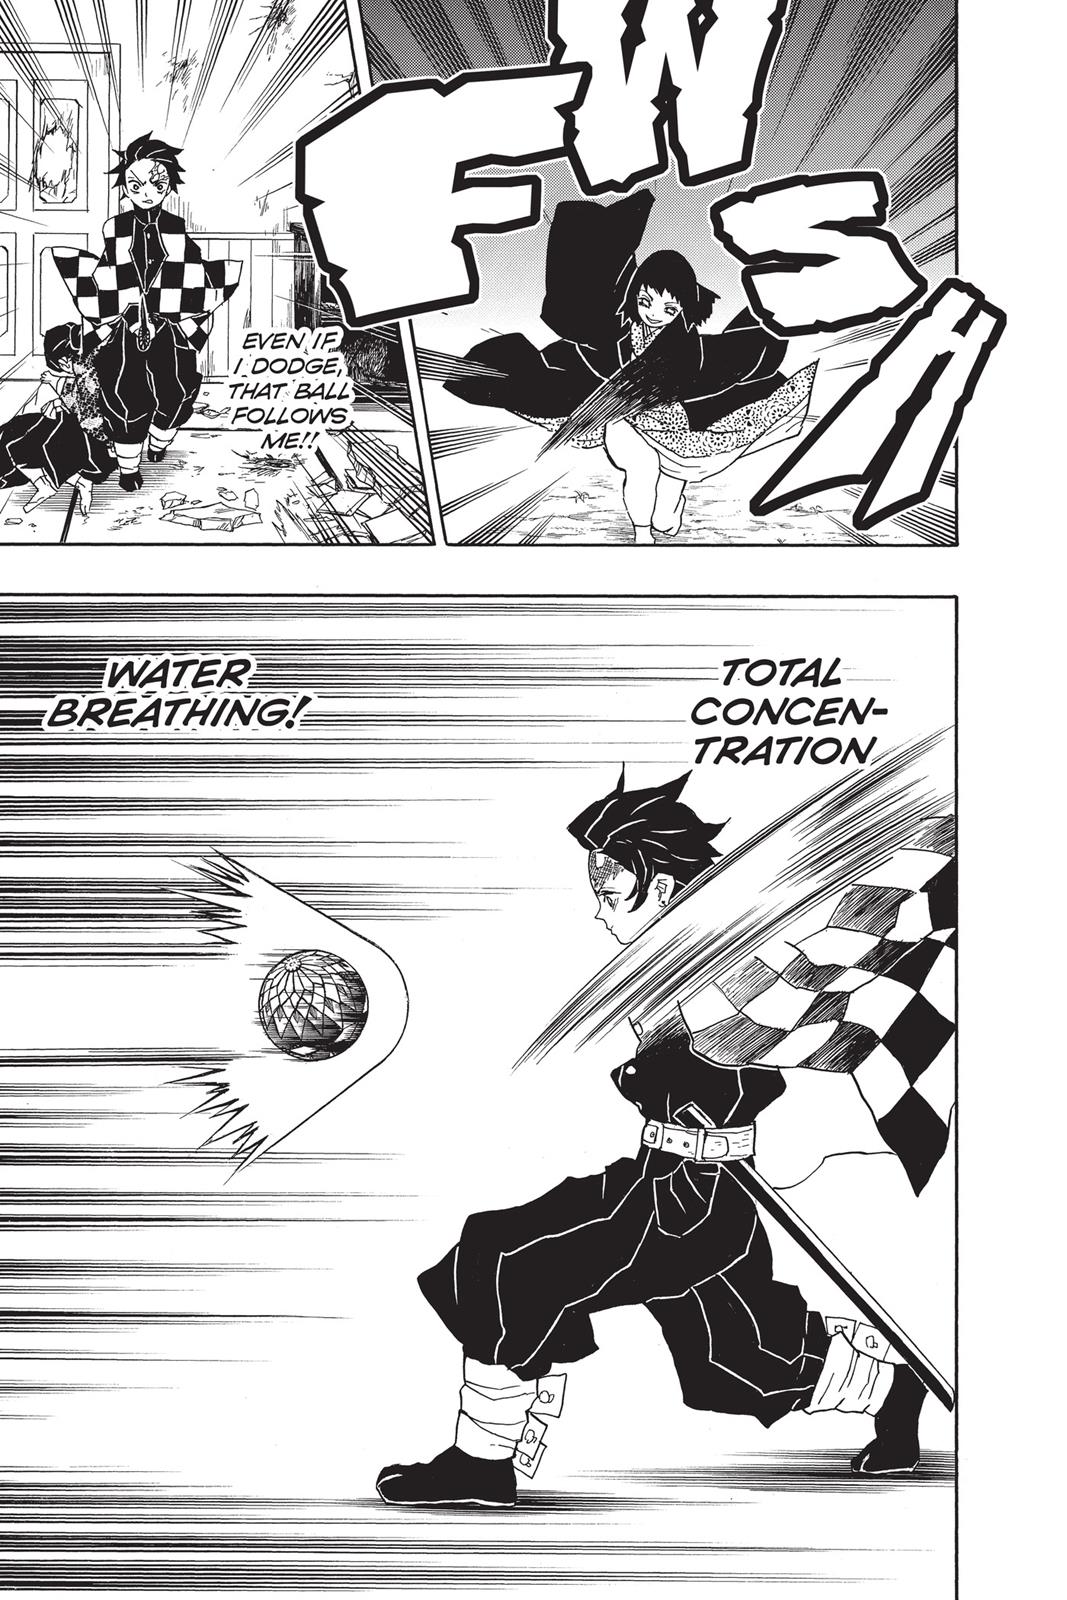 Demon Slayer Manga Manga Chapter - 16 - image 9